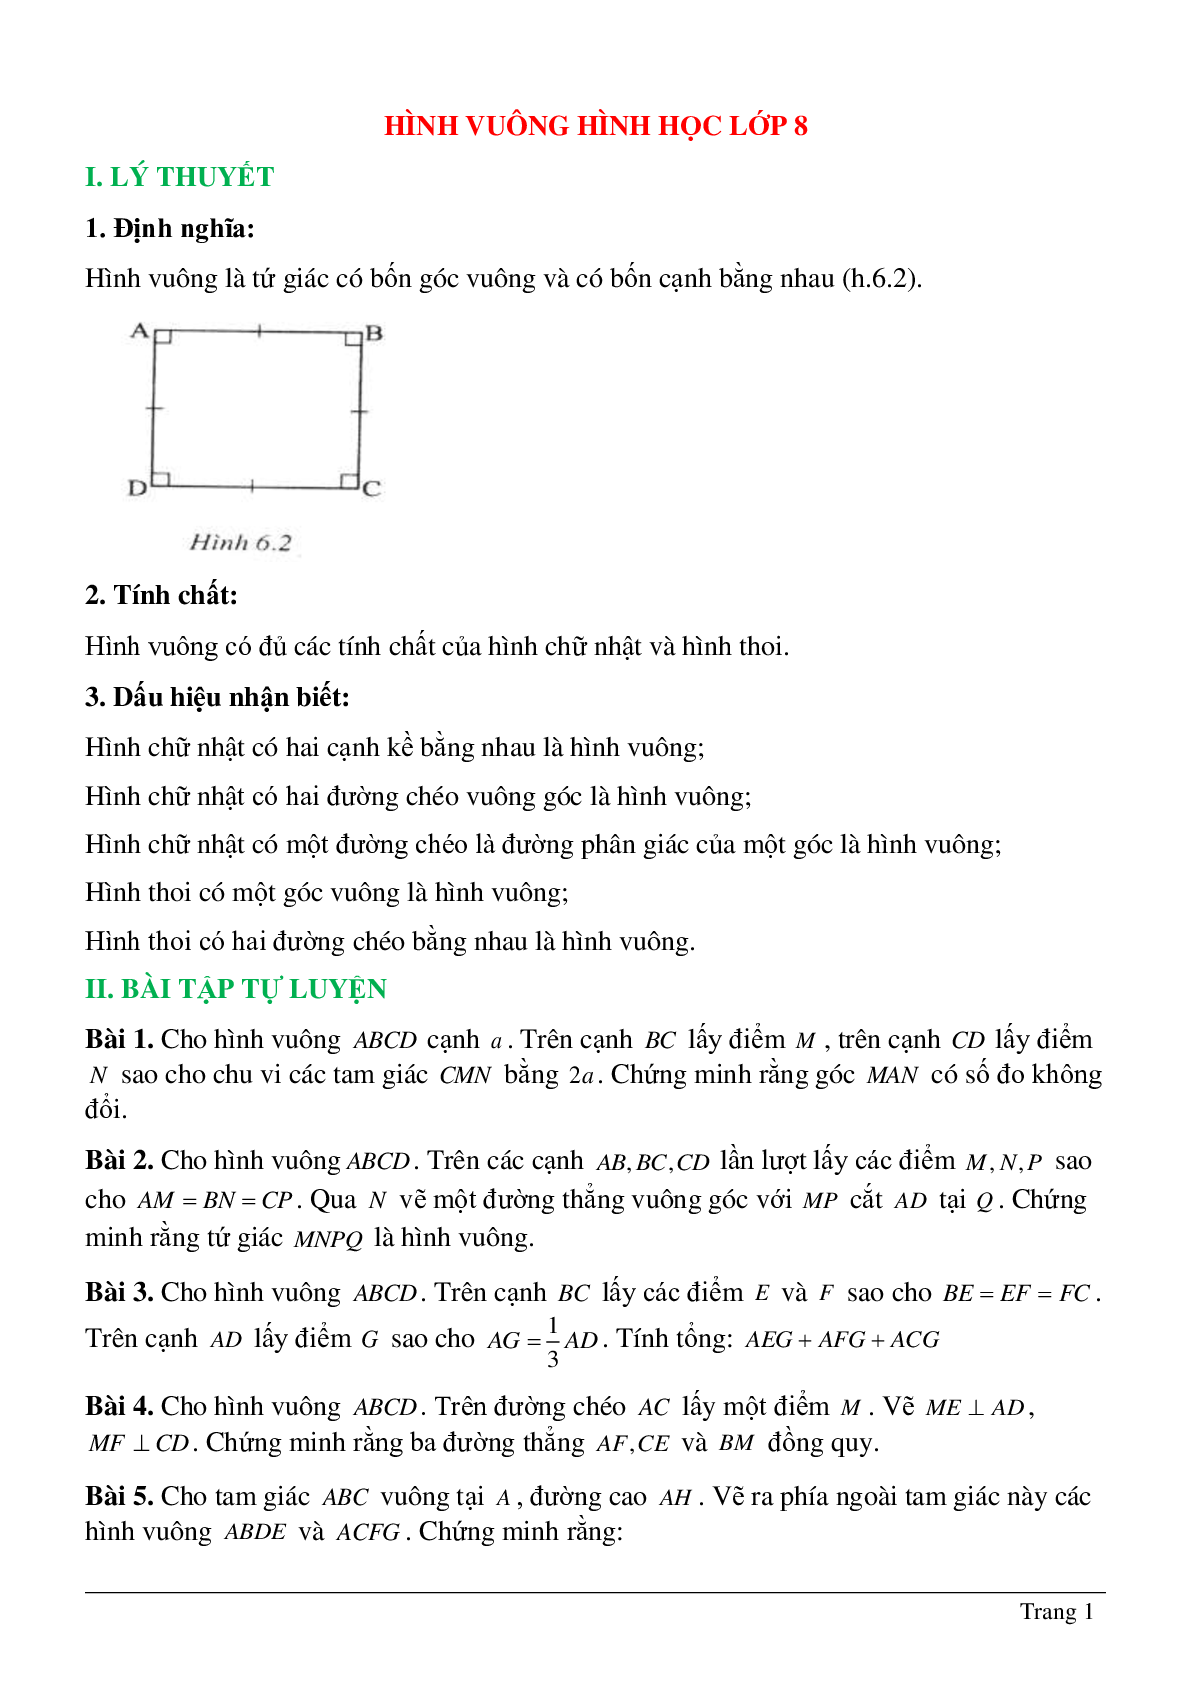 Vẽ Thêm yếu tố phụ để giải toán hình học lớp 8 Nguyễn Đức Tấn